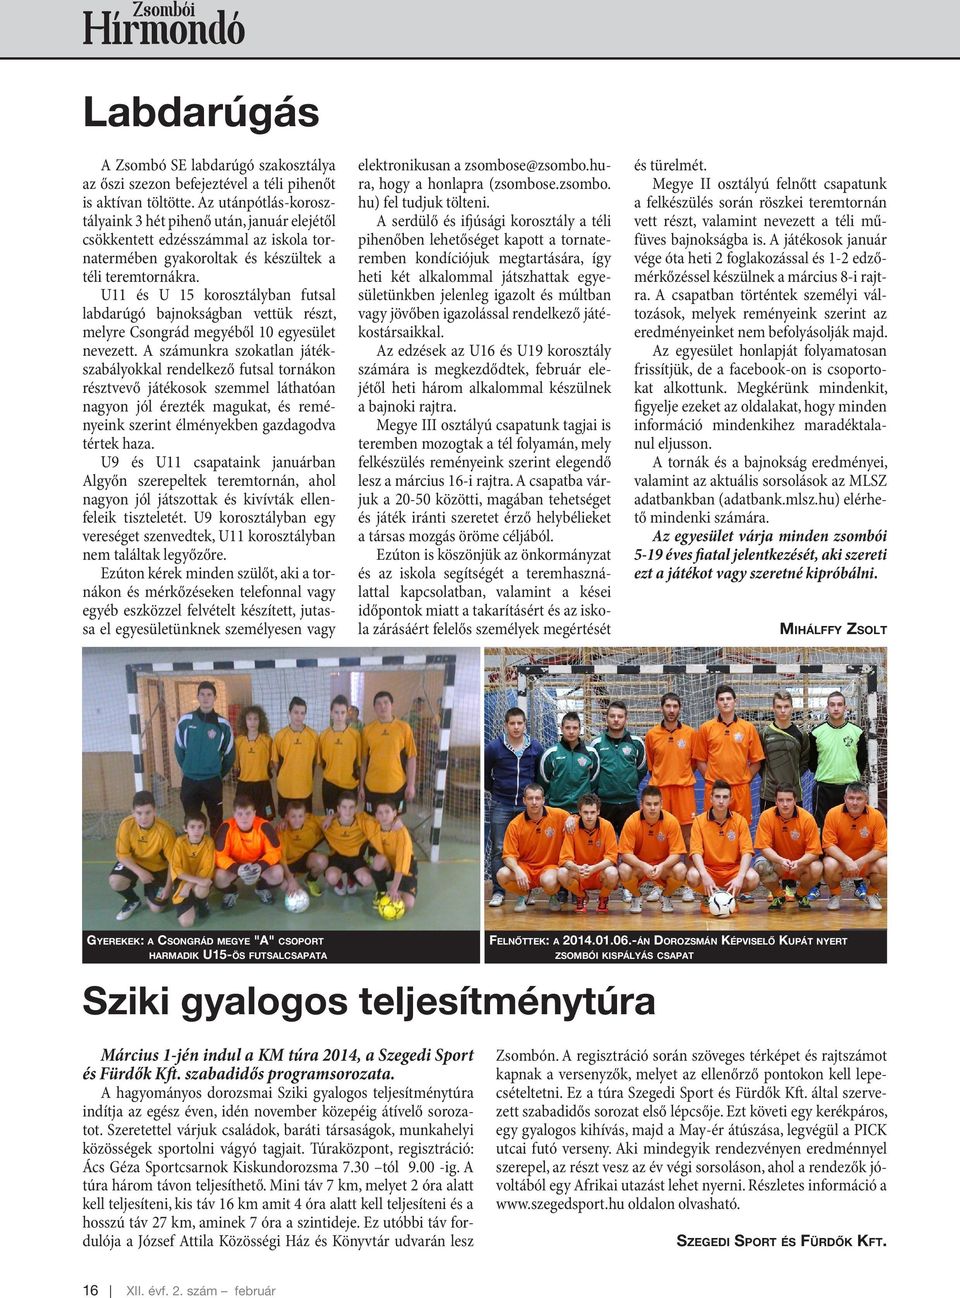 U11 és U 15 korosztályban futsal labdarúgó bajnokságban vettük részt, melyre Csongrád megyéből 10 egyesület nevezett.